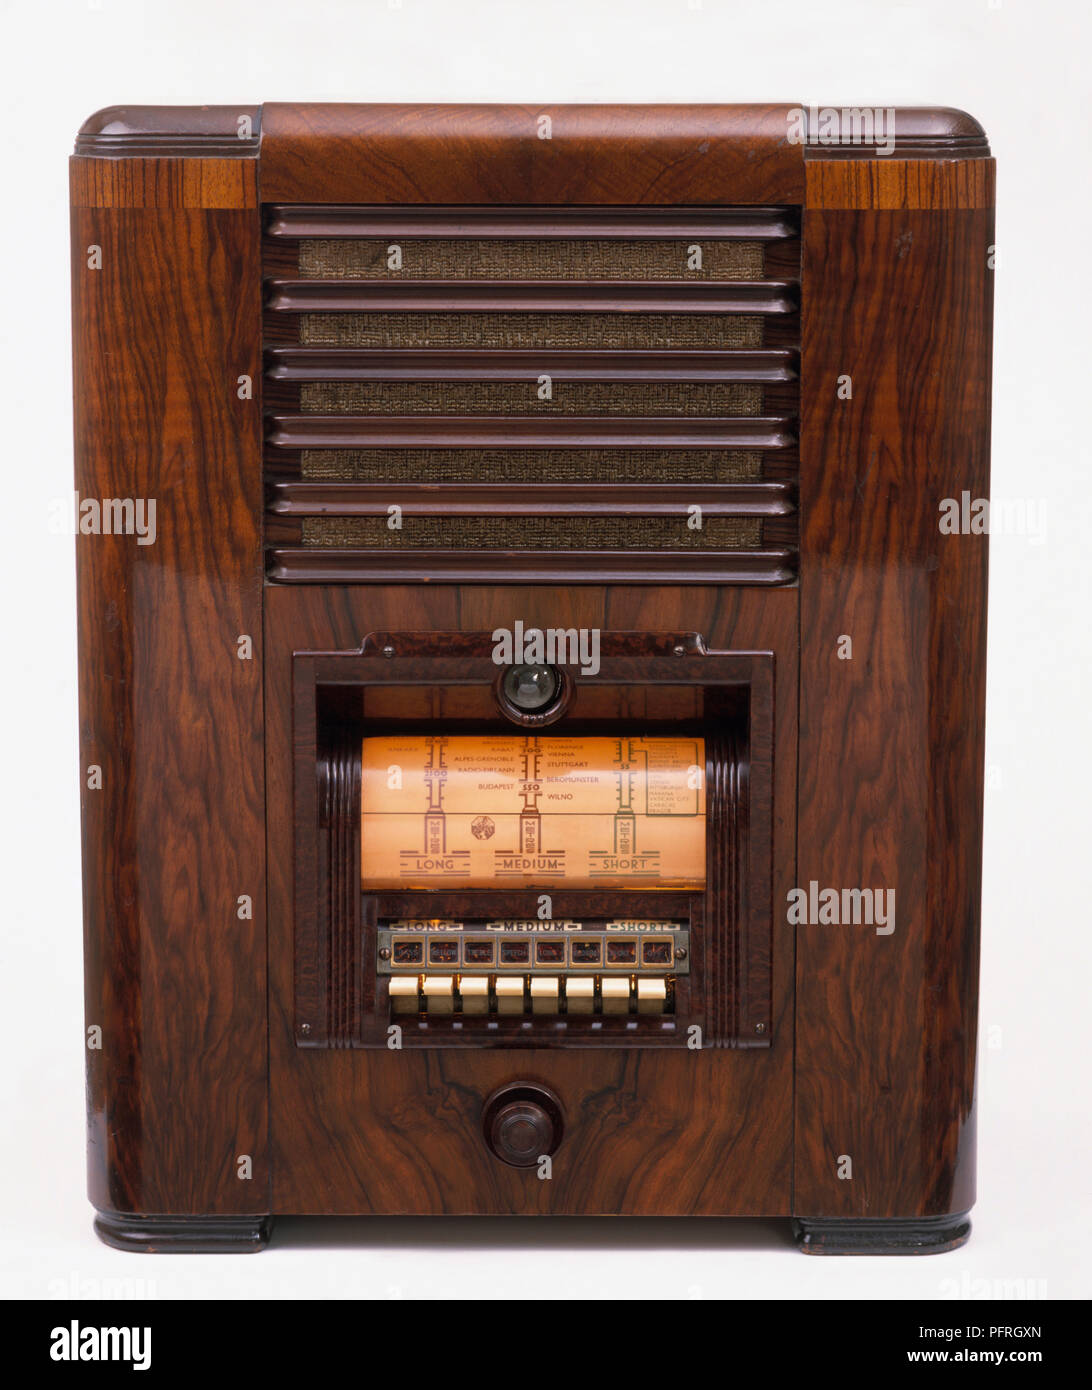 1930s radio in mahogany case Stock Photo